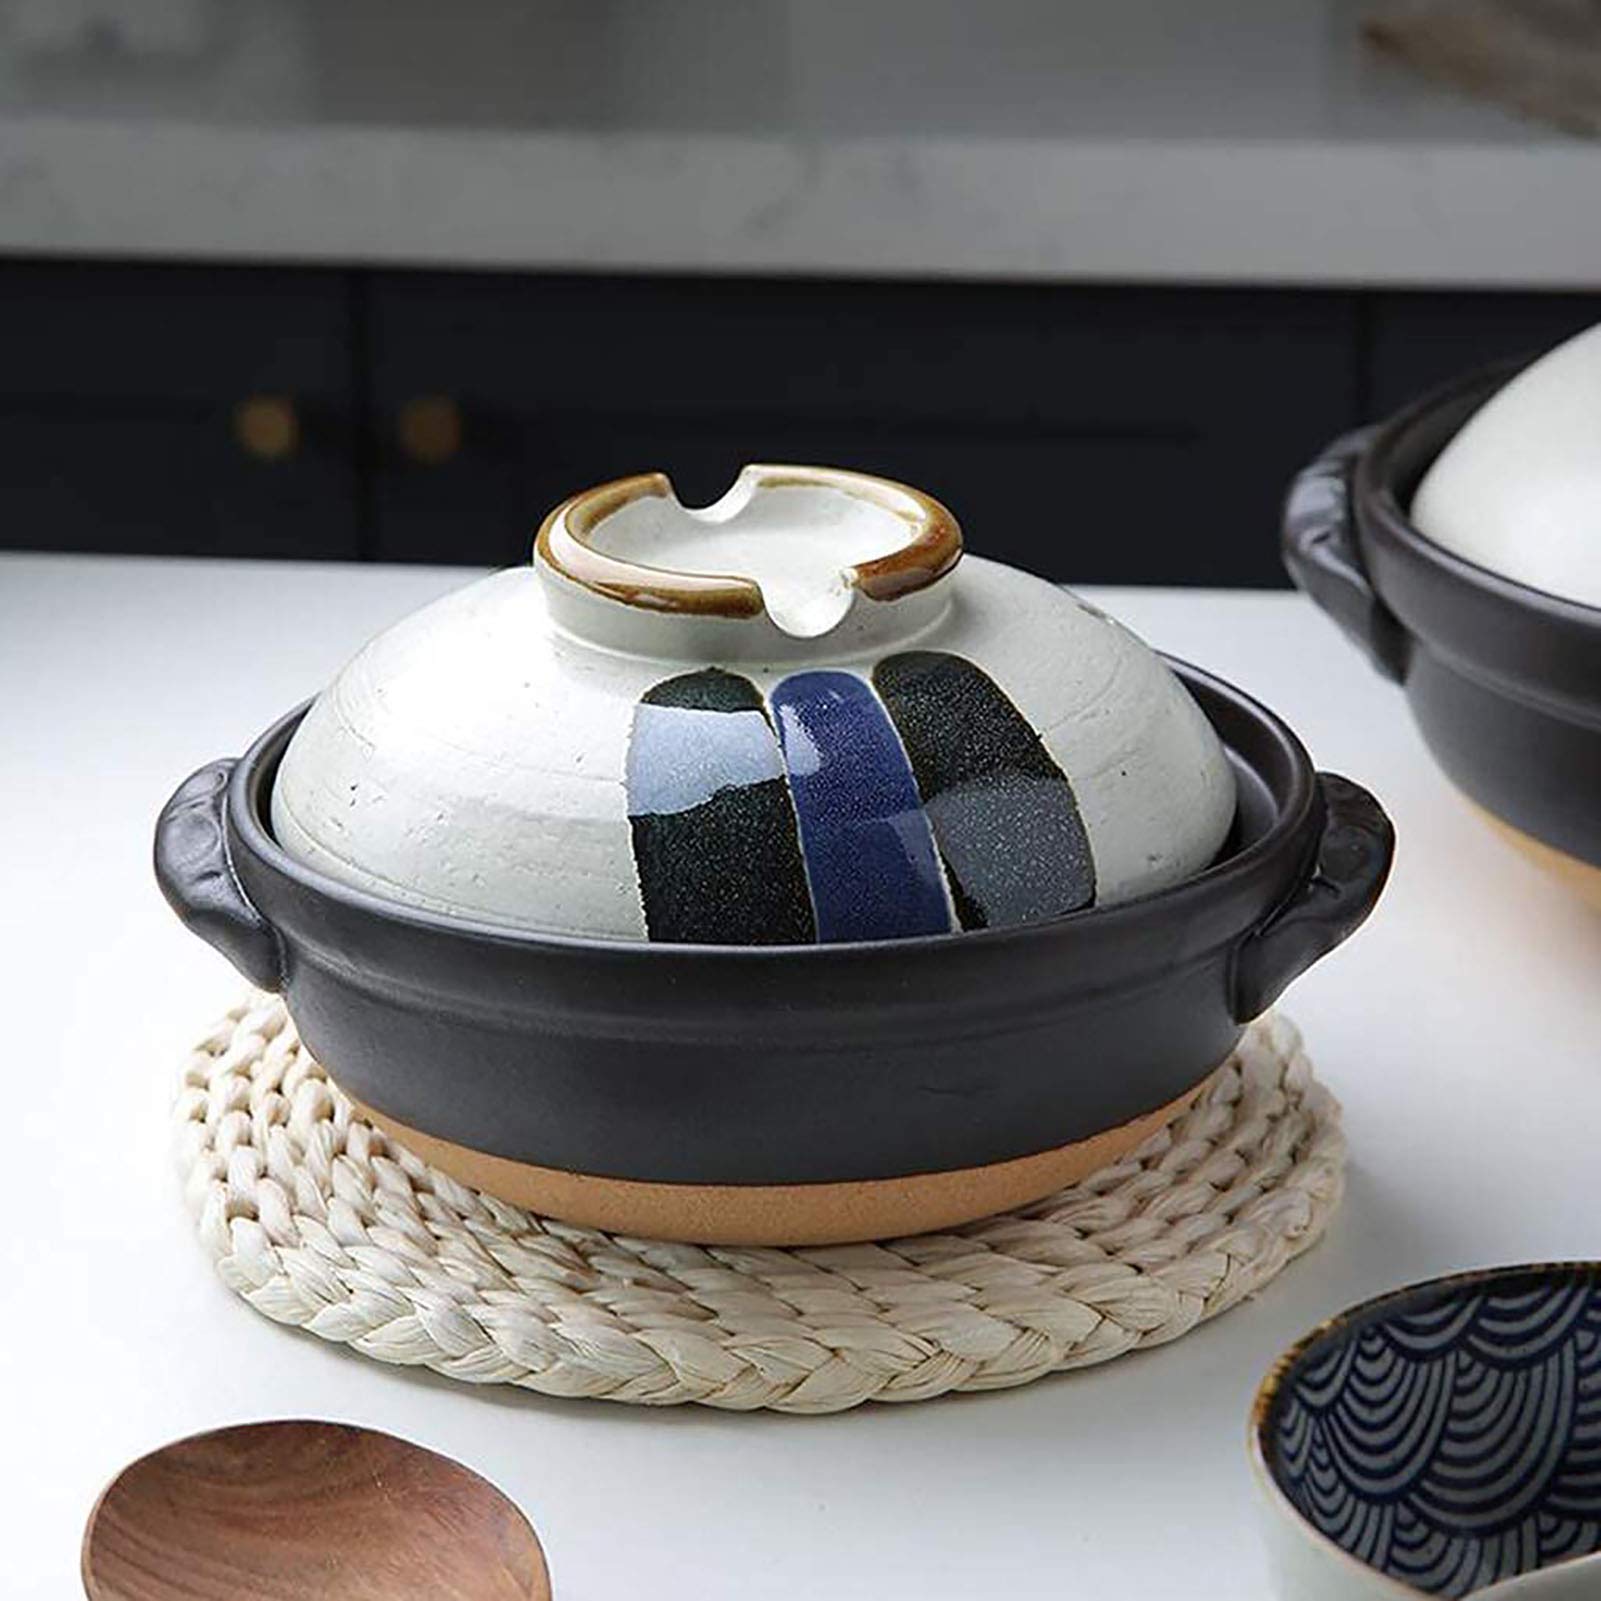 Hengqiyuan Japanischer Keramik-Hot Pot, Ton-Kochtöpfe, Hitzebeständiger Auflauf Mit Deckel, Kleiner Runder Ton-Ton-Topf, Reiskocher Für Eintopfsuppen-Nudeln,2.8L